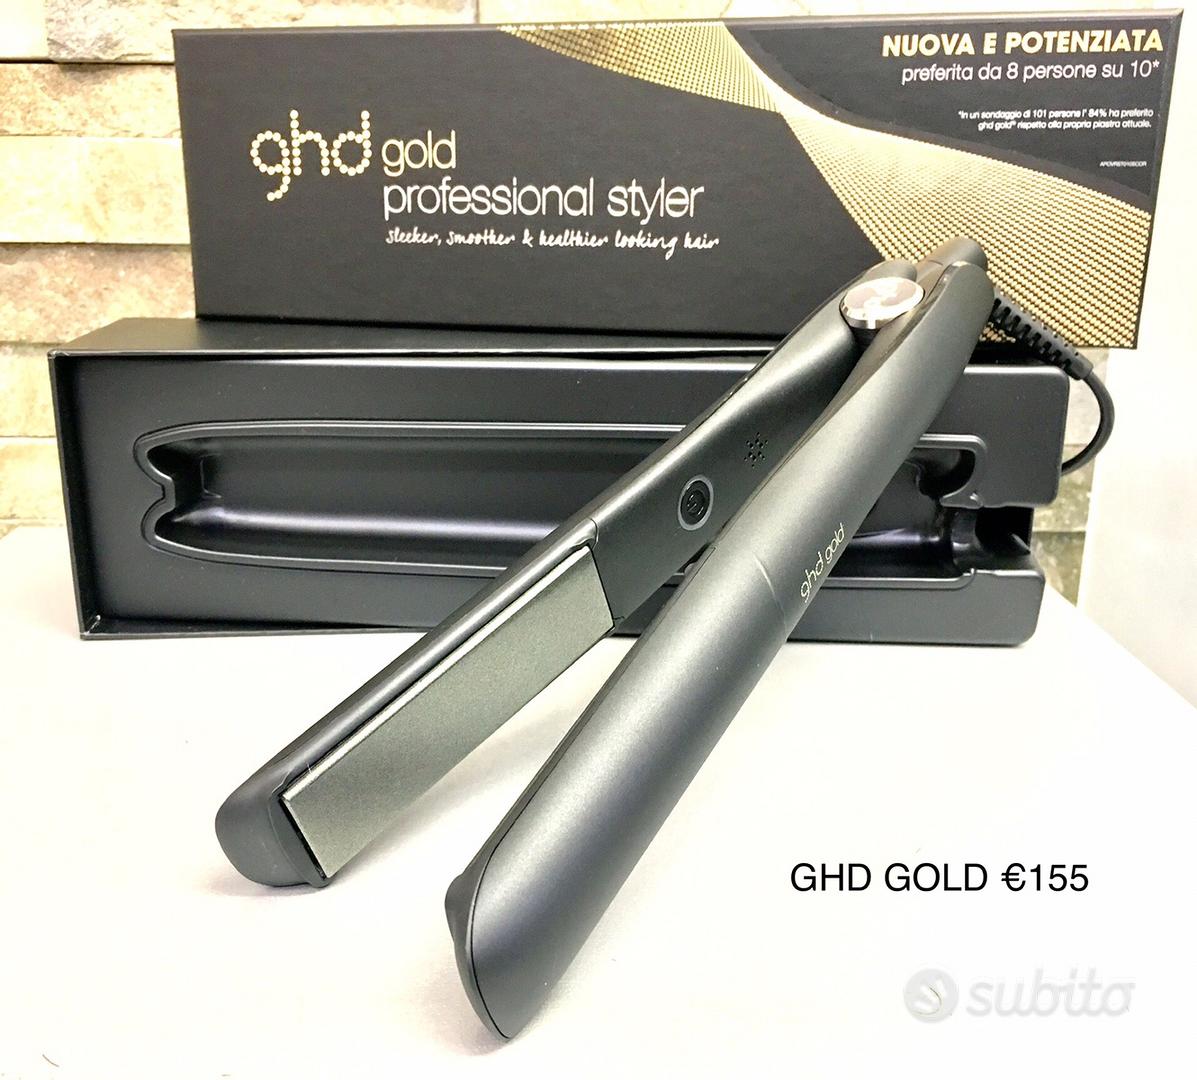 Piastra GHD GOLD nera - Elettrodomestici In vendita a Milano